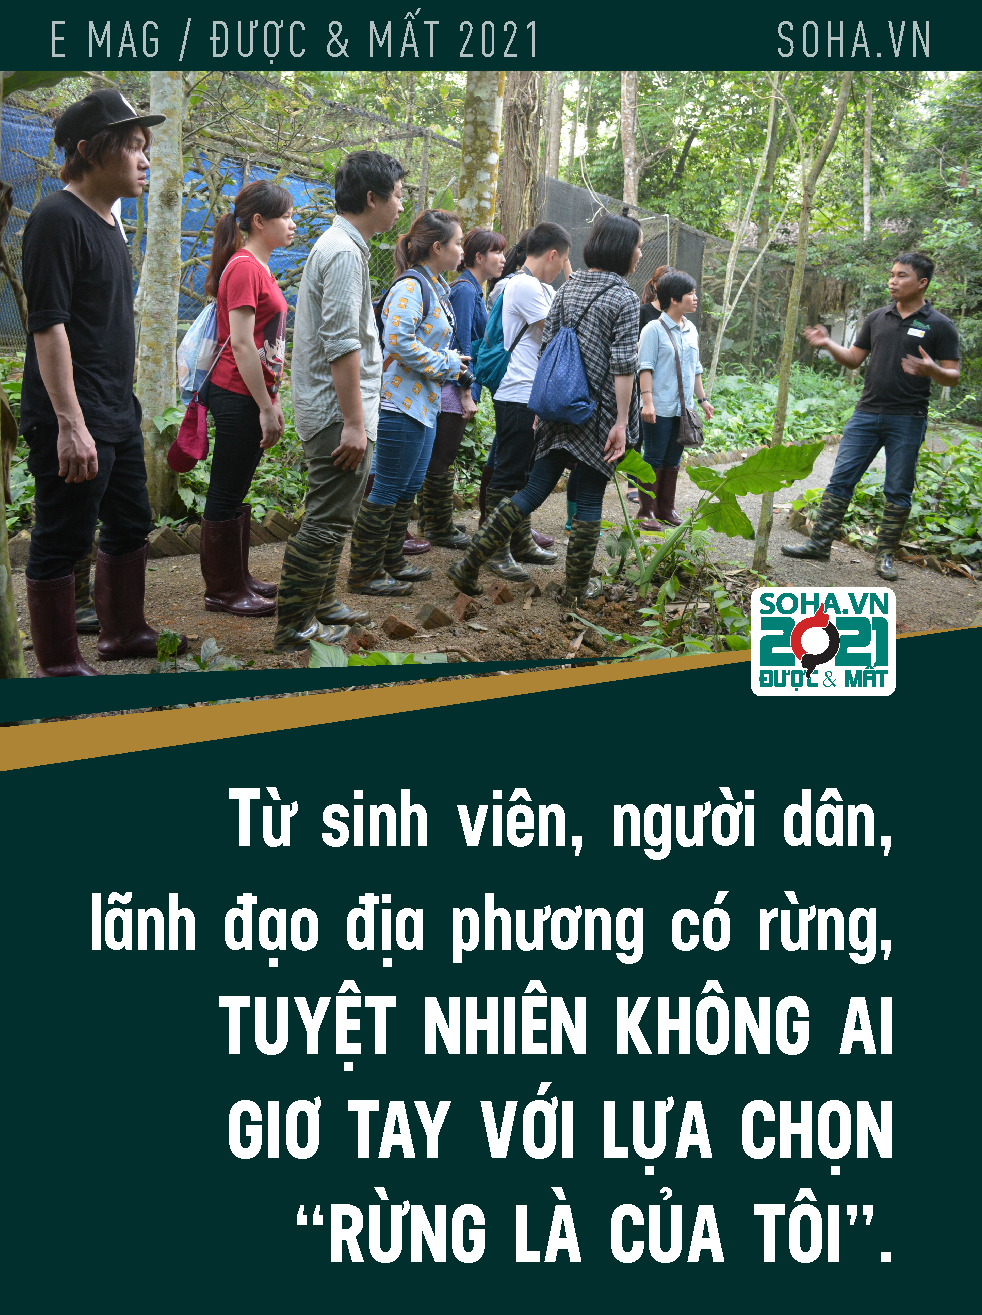 Nỗi đau khó nói nên lời của người Việt làm bảo tồn đầu tiên đoạt giải Nobel xanh - Ảnh 6.